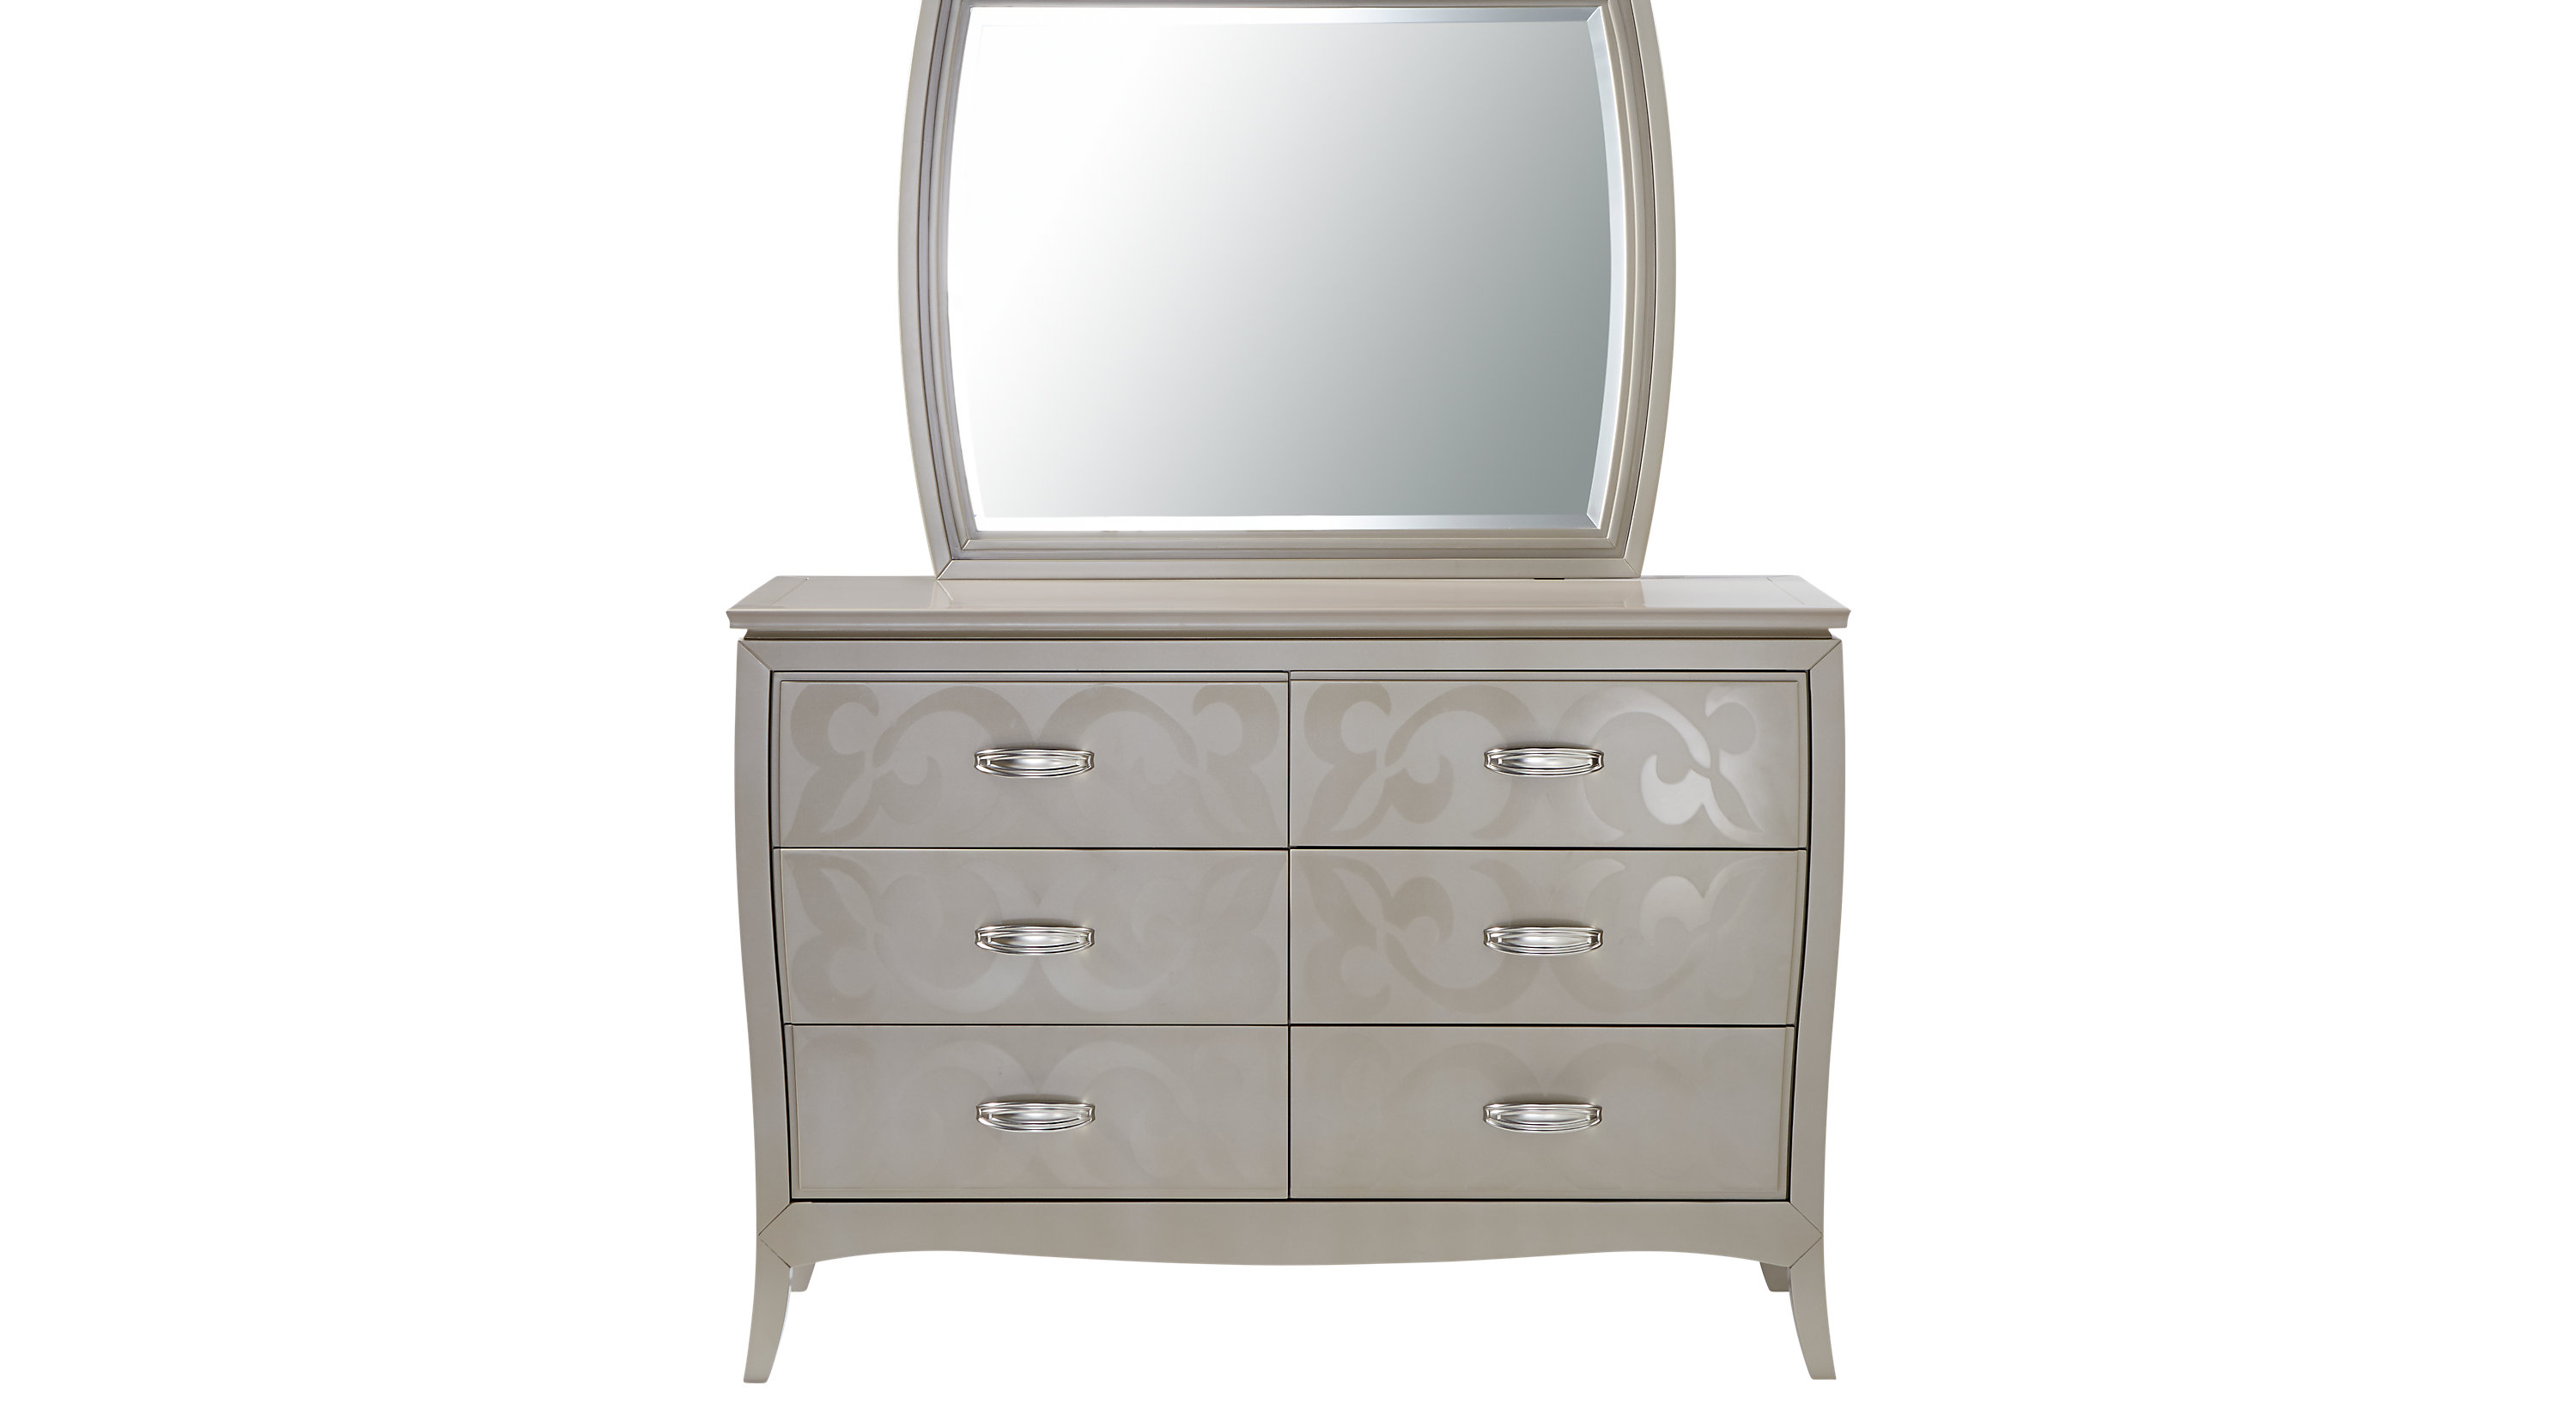 Dresser with mirror Belle Noir champagne dresser & mirror set JSHDMZC